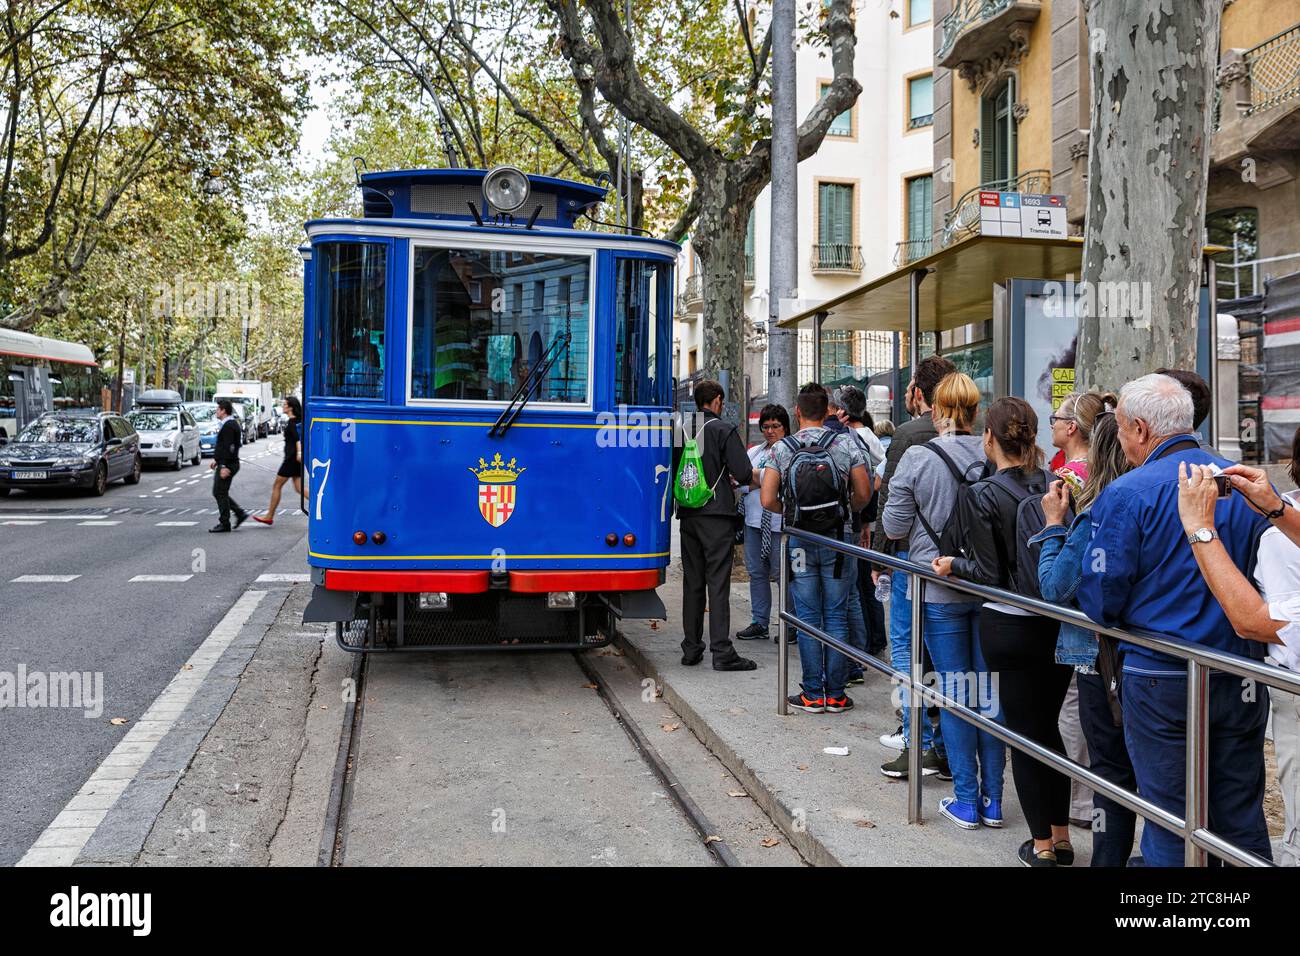 Nostalgico tram blu, gruppo turistico che aspetta alla fermata, Tramvia Blau, Art Nouveau, Barcellona, Spagna Foto Stock